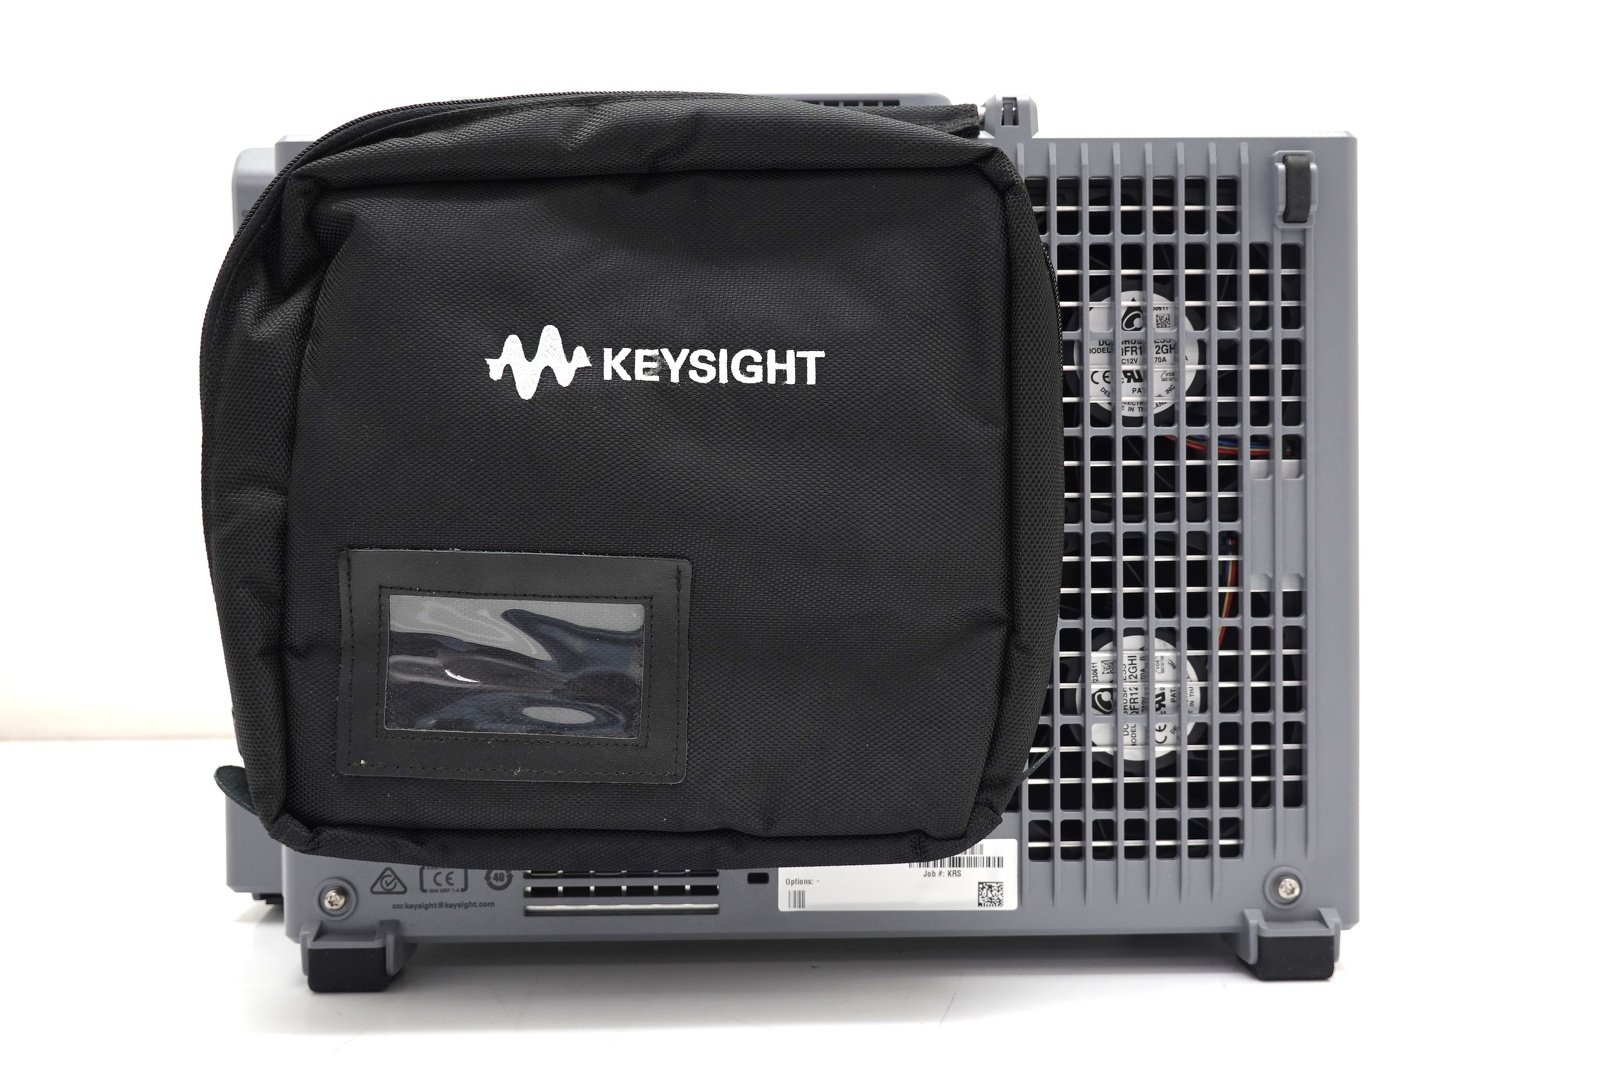 Keysight MXR108A Infiniium MXR-Series Real-Time Oscilloscope / 1GHz / 16GSa/s / 8 Channels